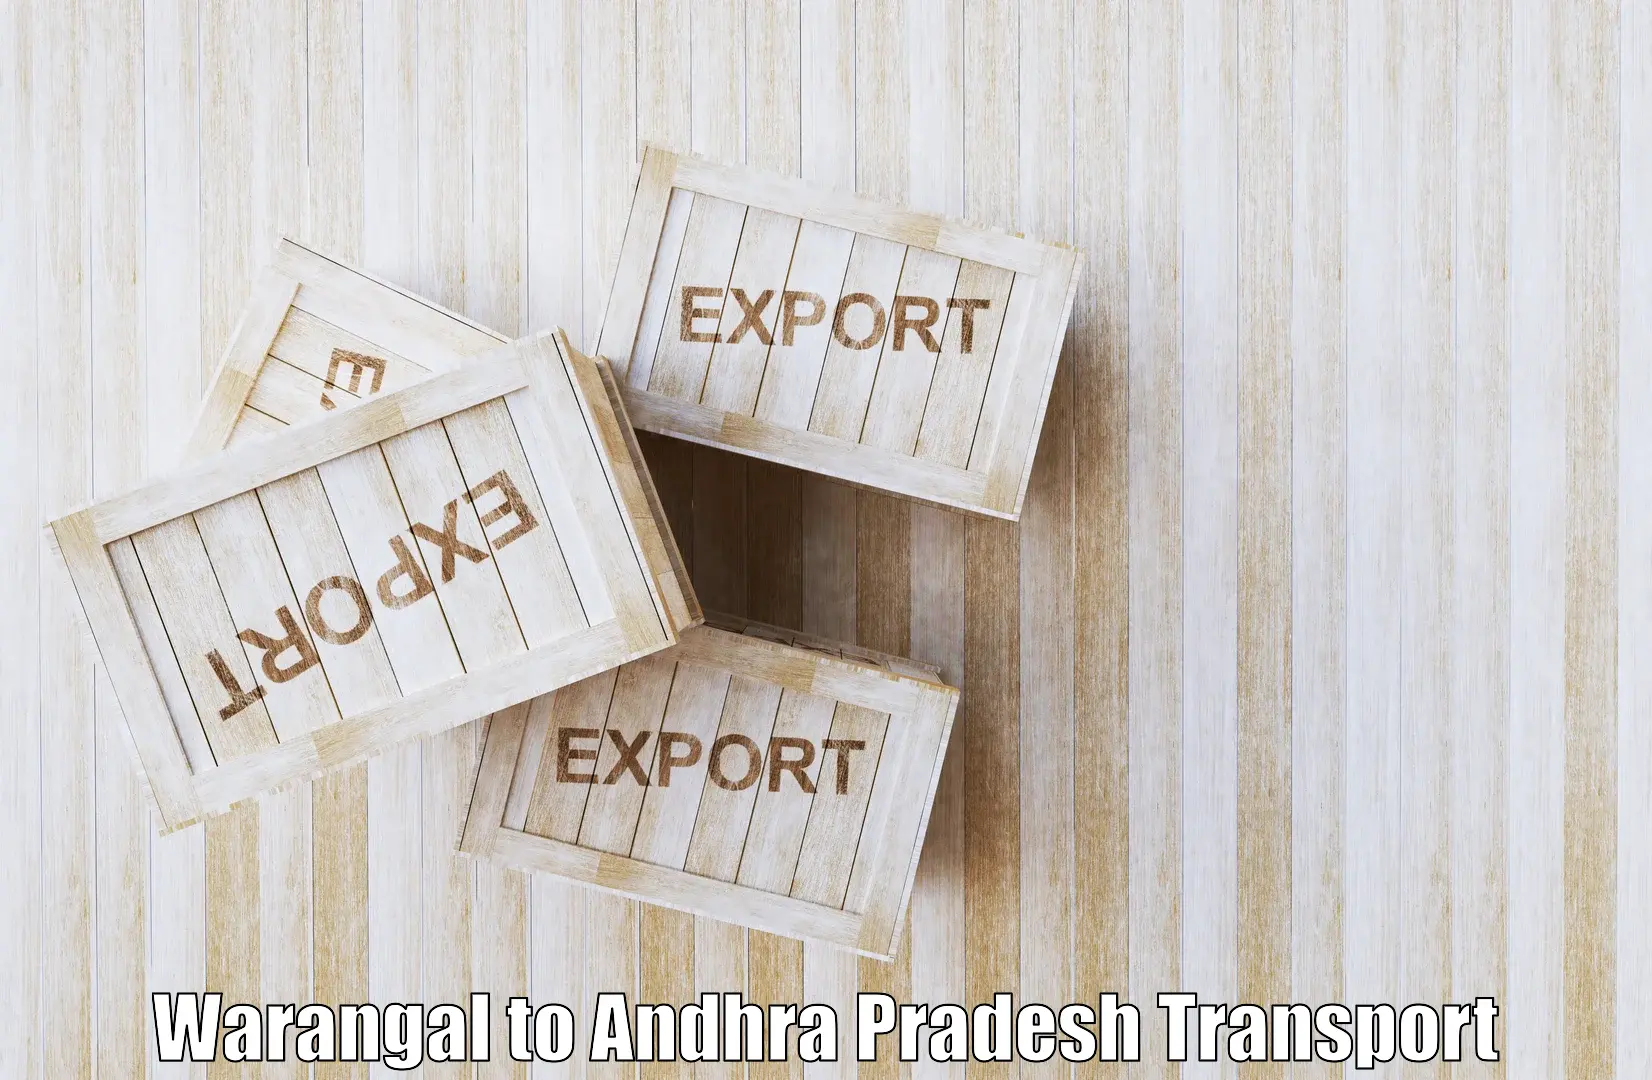 Interstate transport services Warangal to Garividi